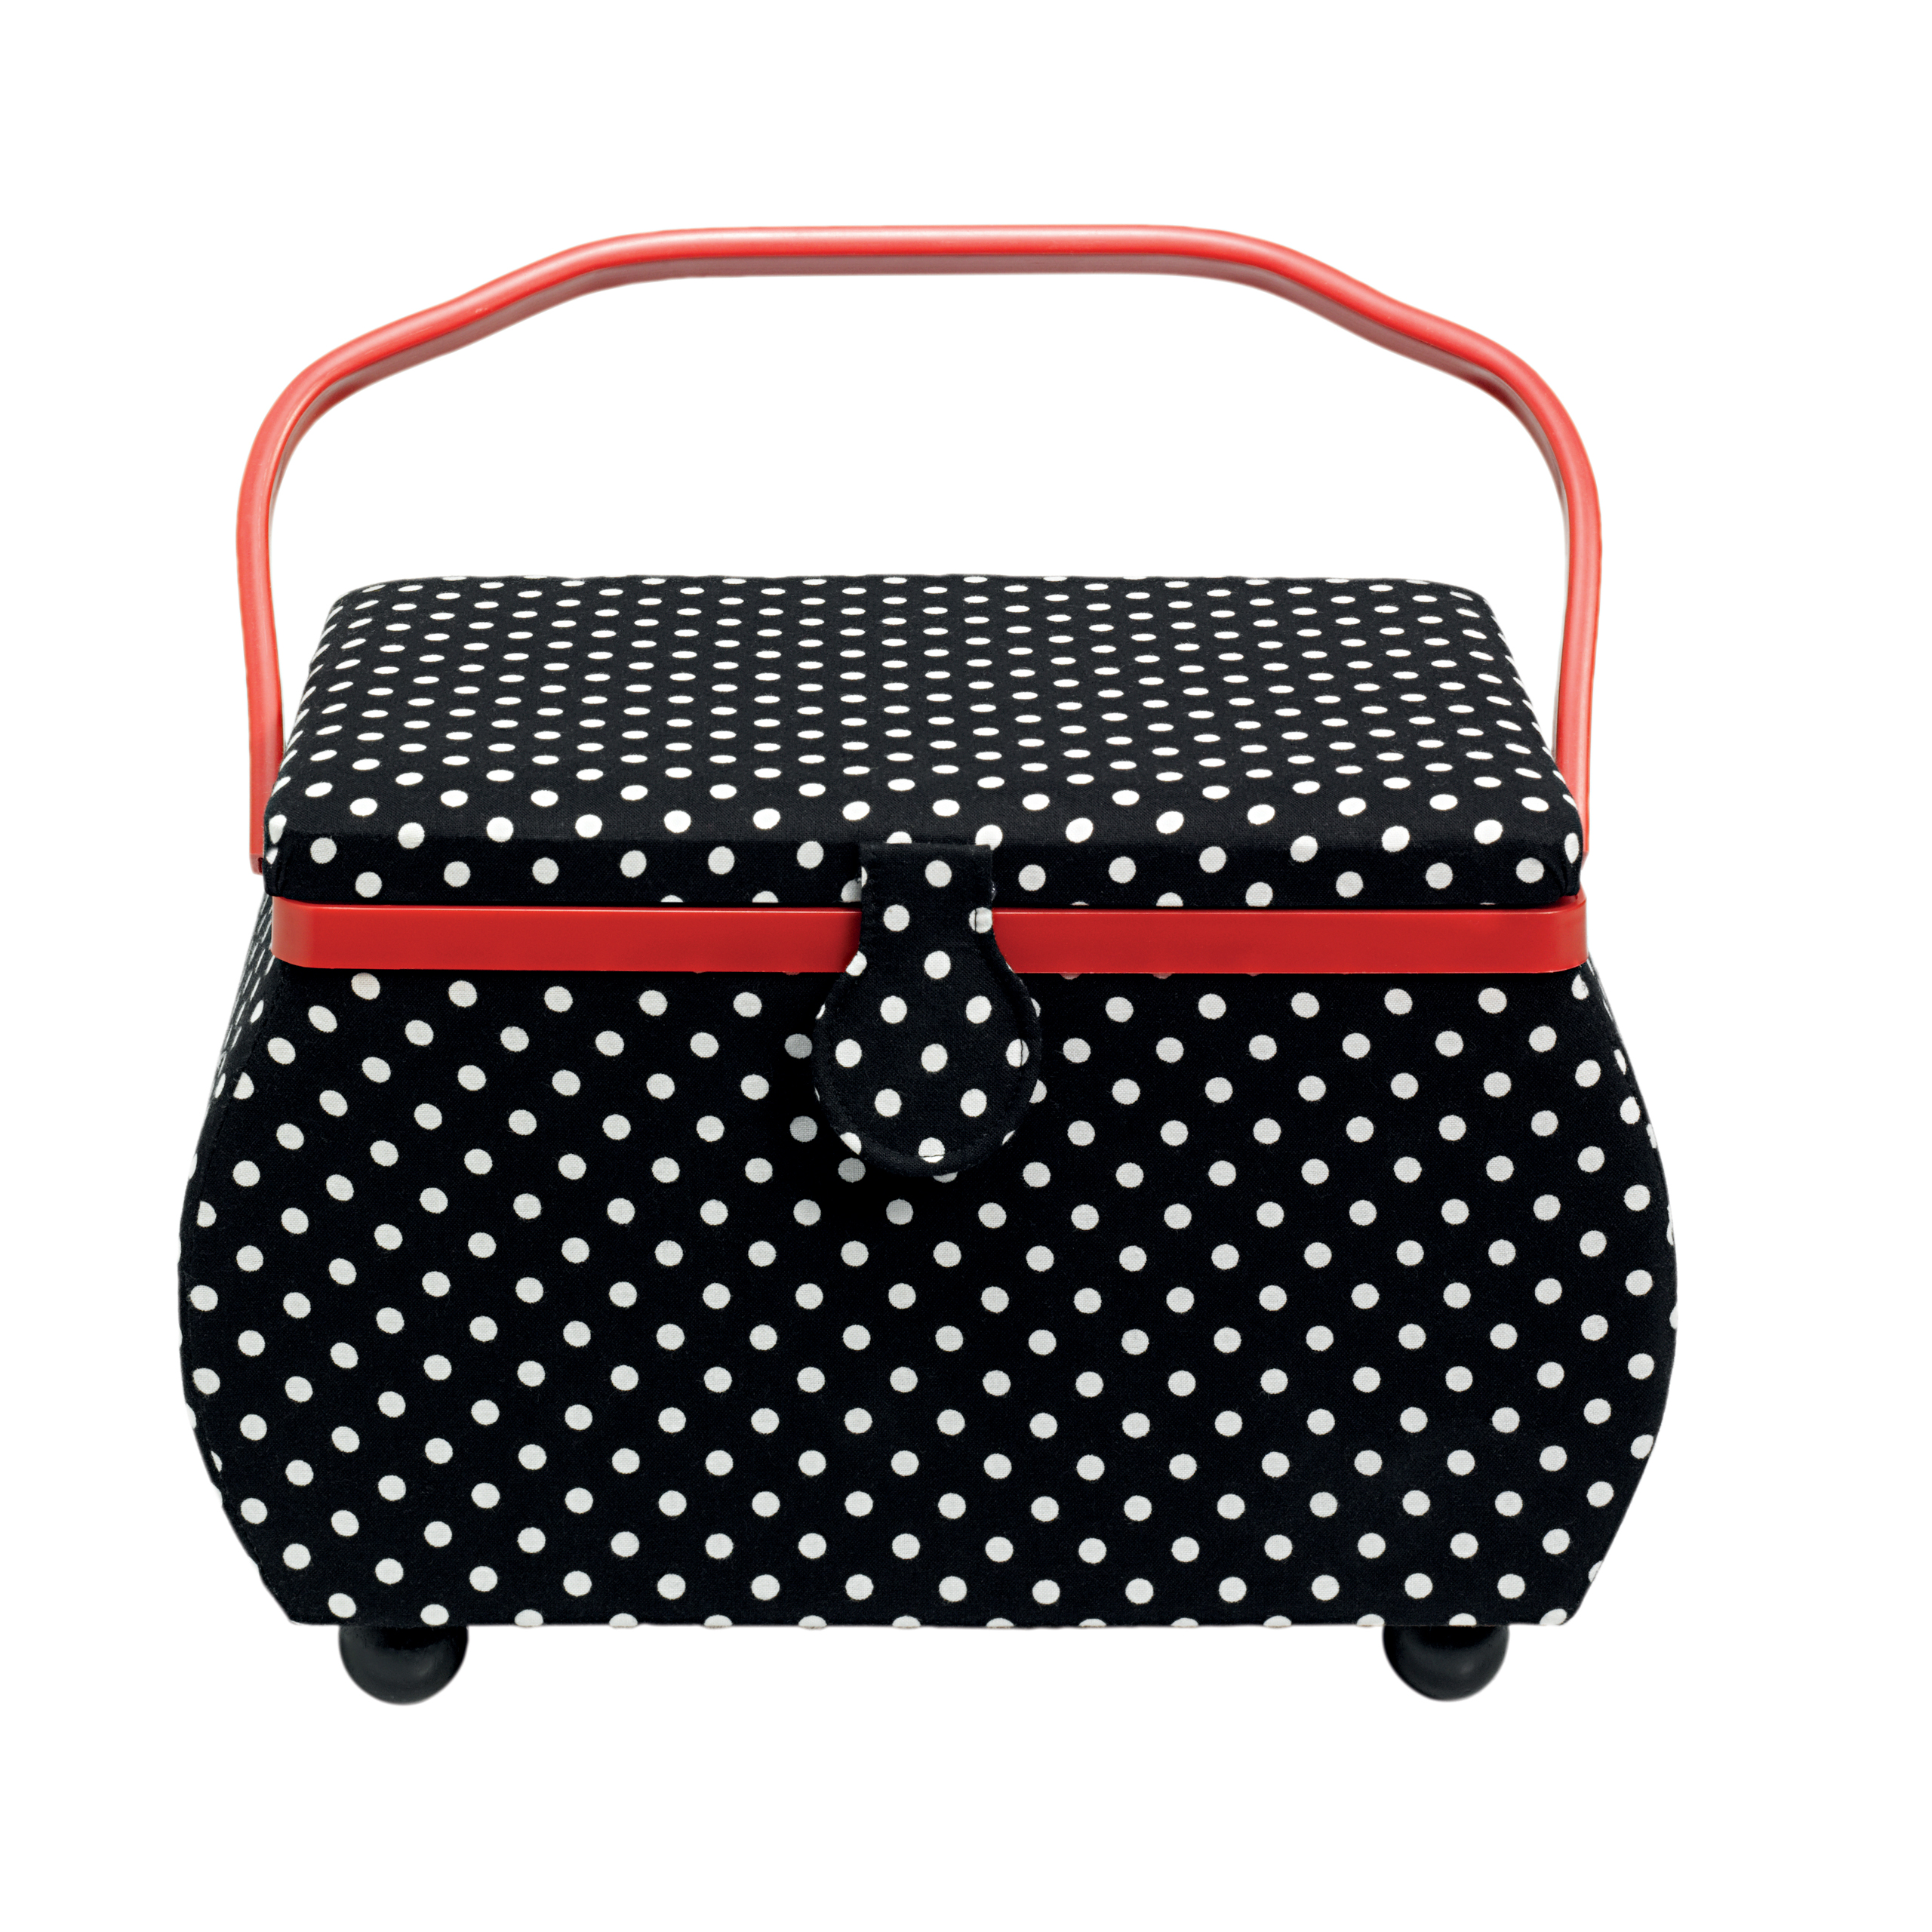 Sewing Basket Polka Dots Black/White L, 1 St